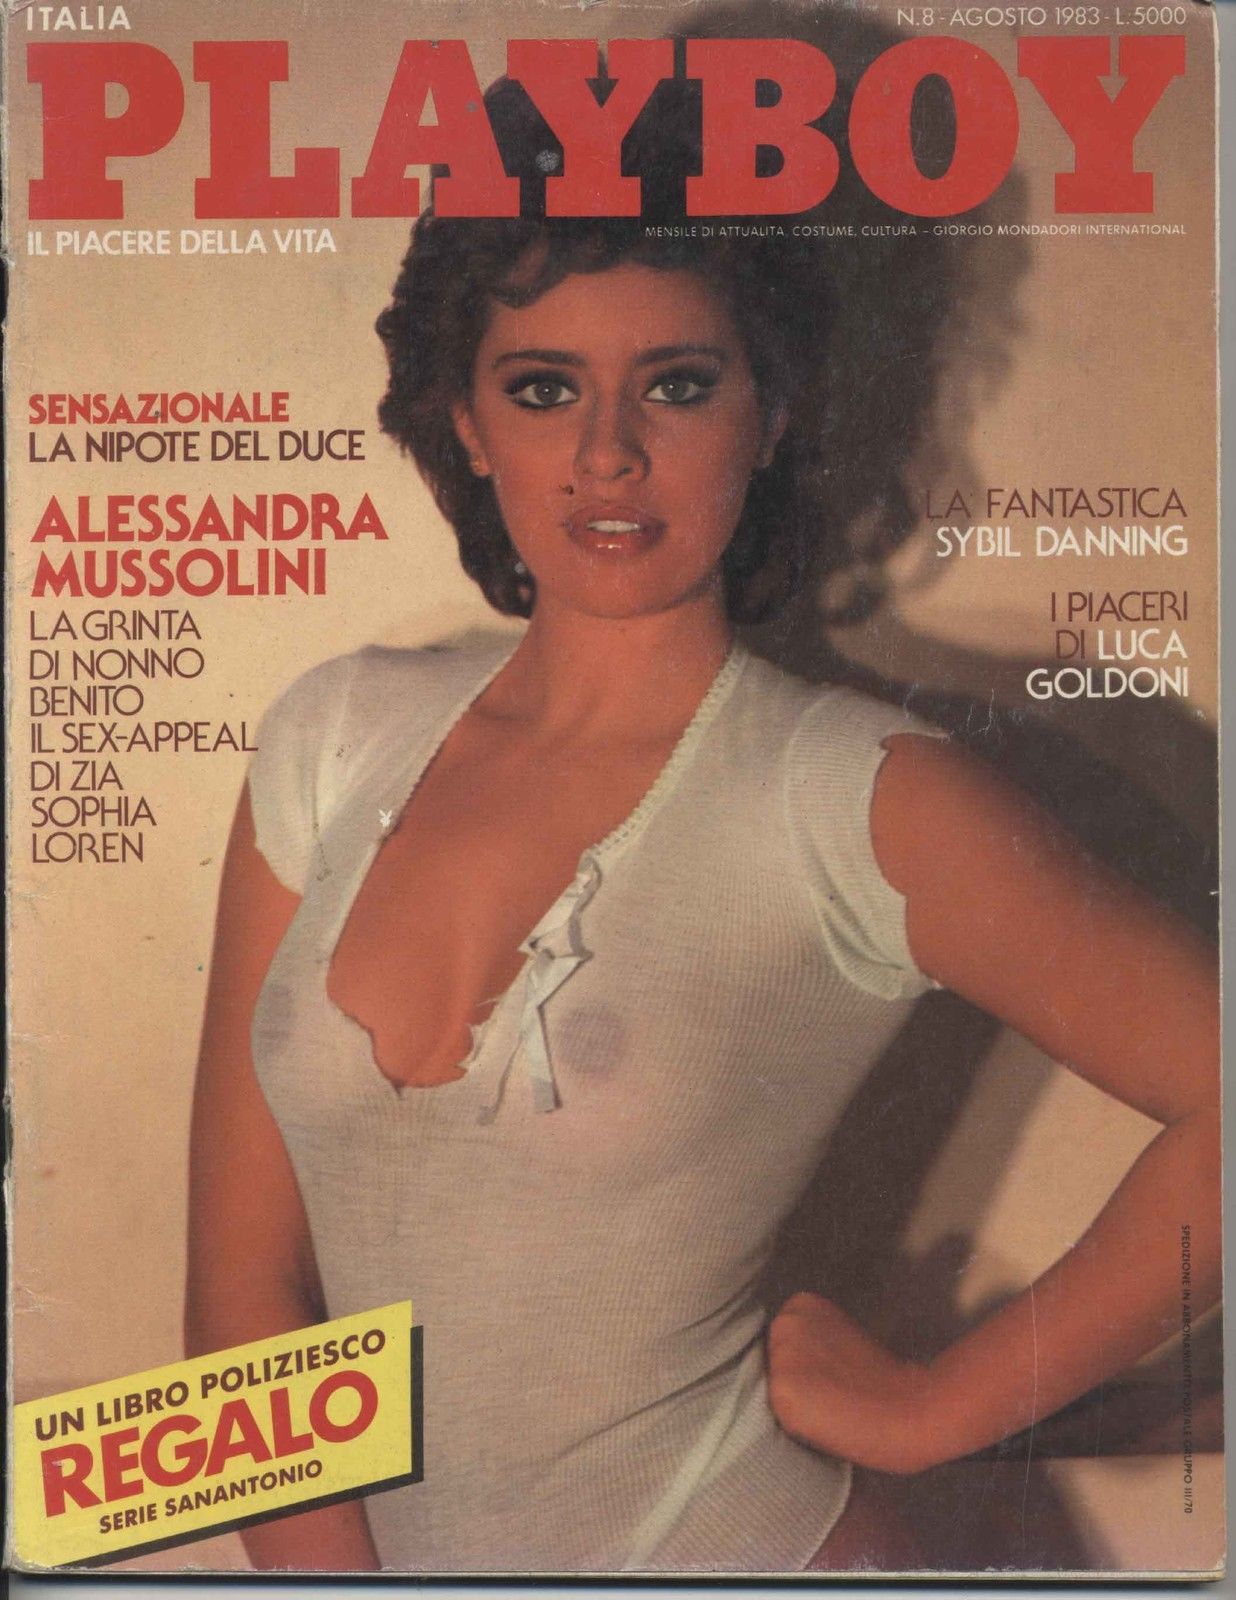 Alessandra Mussolini.